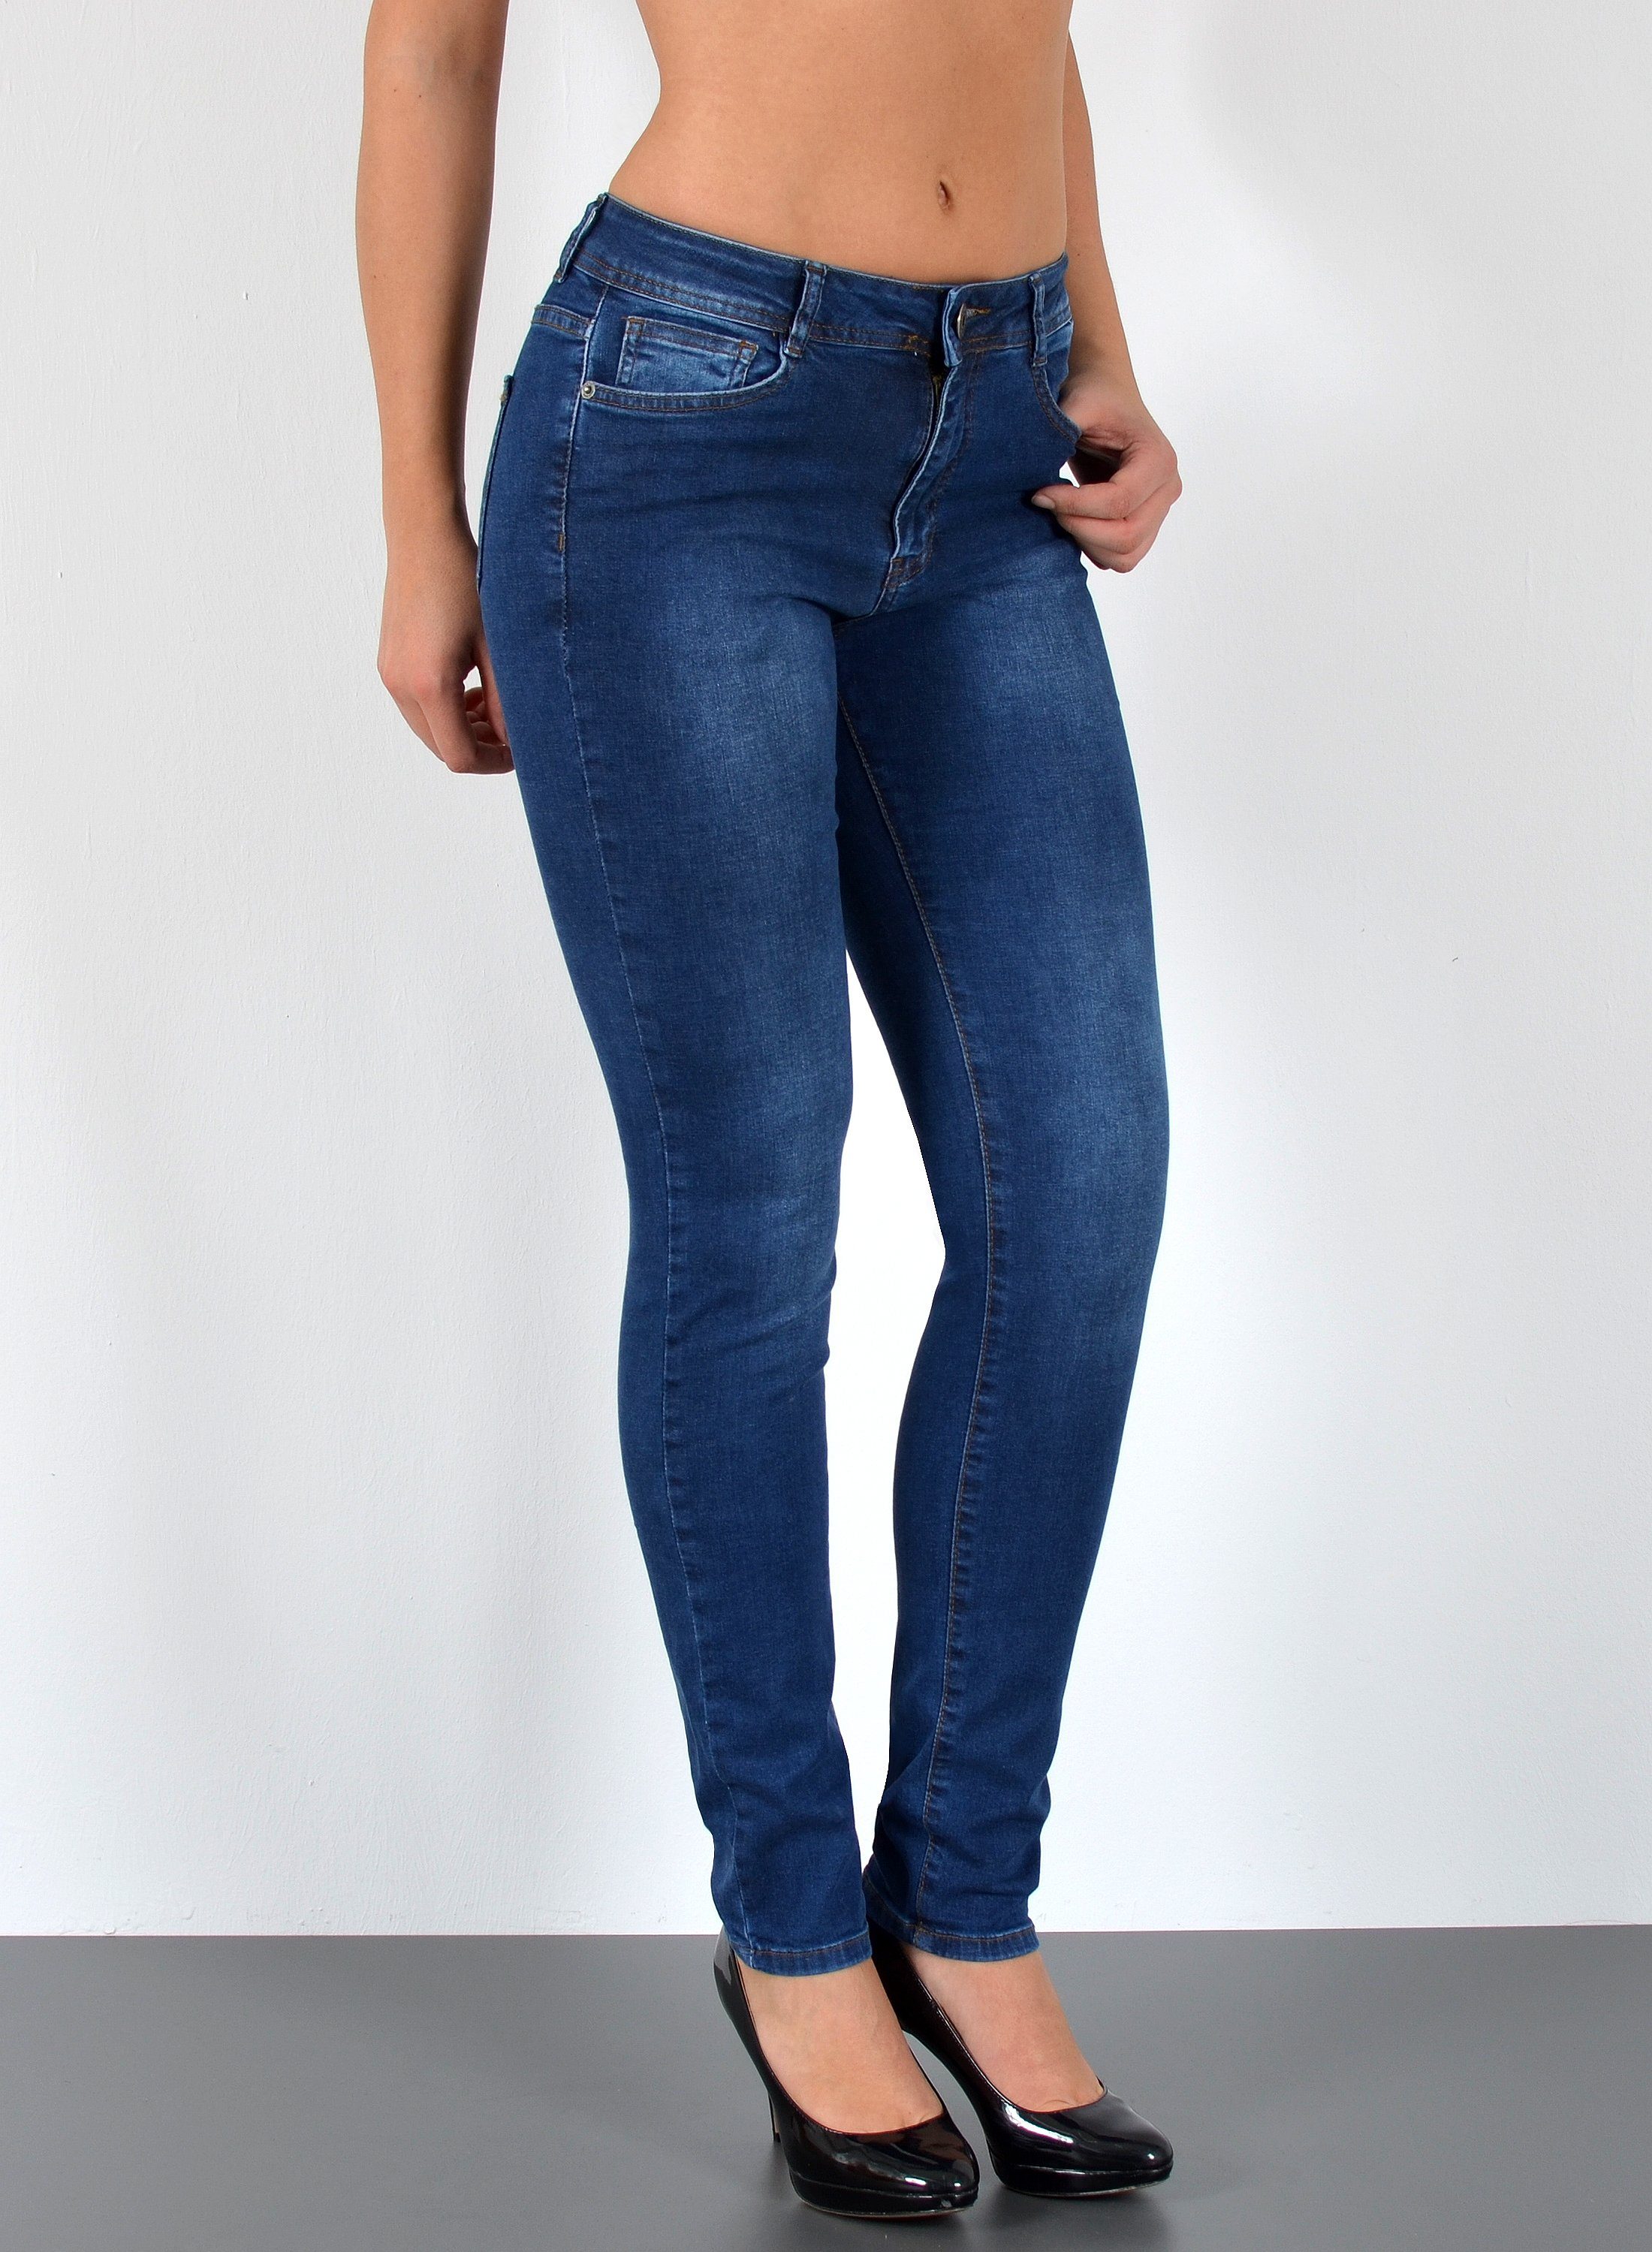 ESRA Skinny-fit-Jeans S100 Damen High Waist Jeans Skinny, Damen Röhrenjeans  mit enger Beinform und hoher Leibhöhe, bis Übergröße / Plussize Große  Größe, Damen enge Skinny Jeans mit Stretch und Hoch Bund